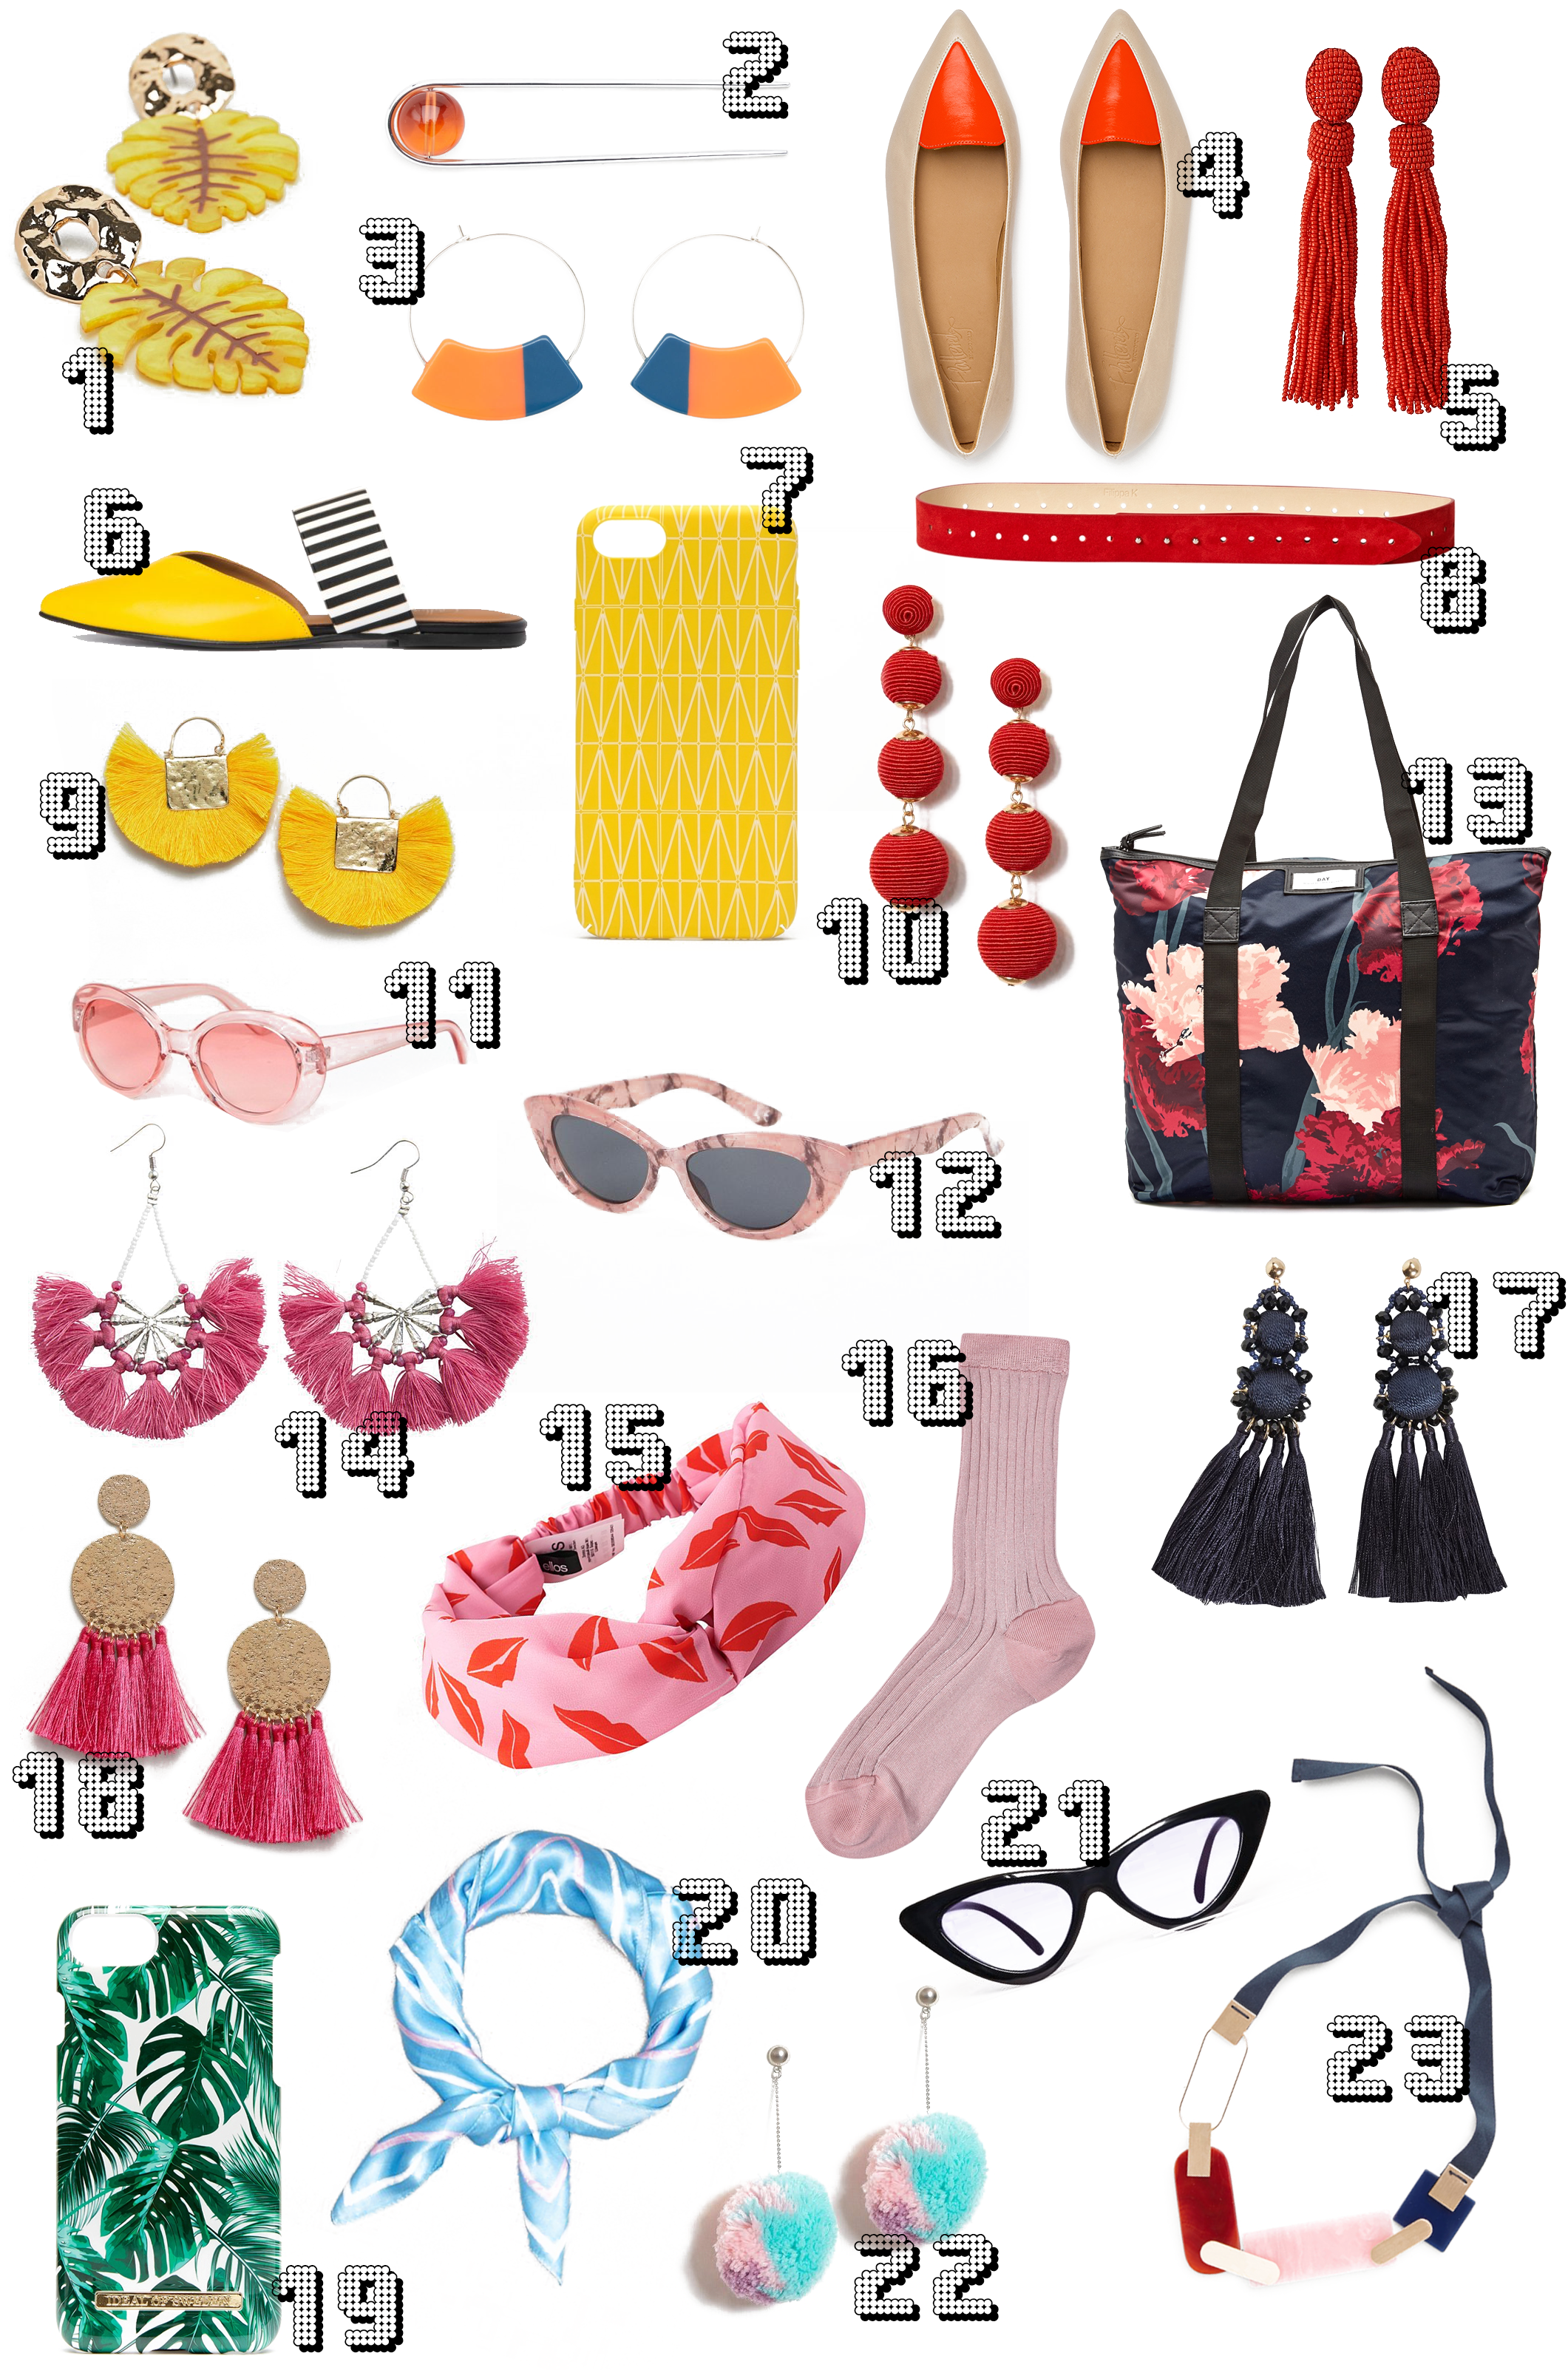 23 accessories til din sommer